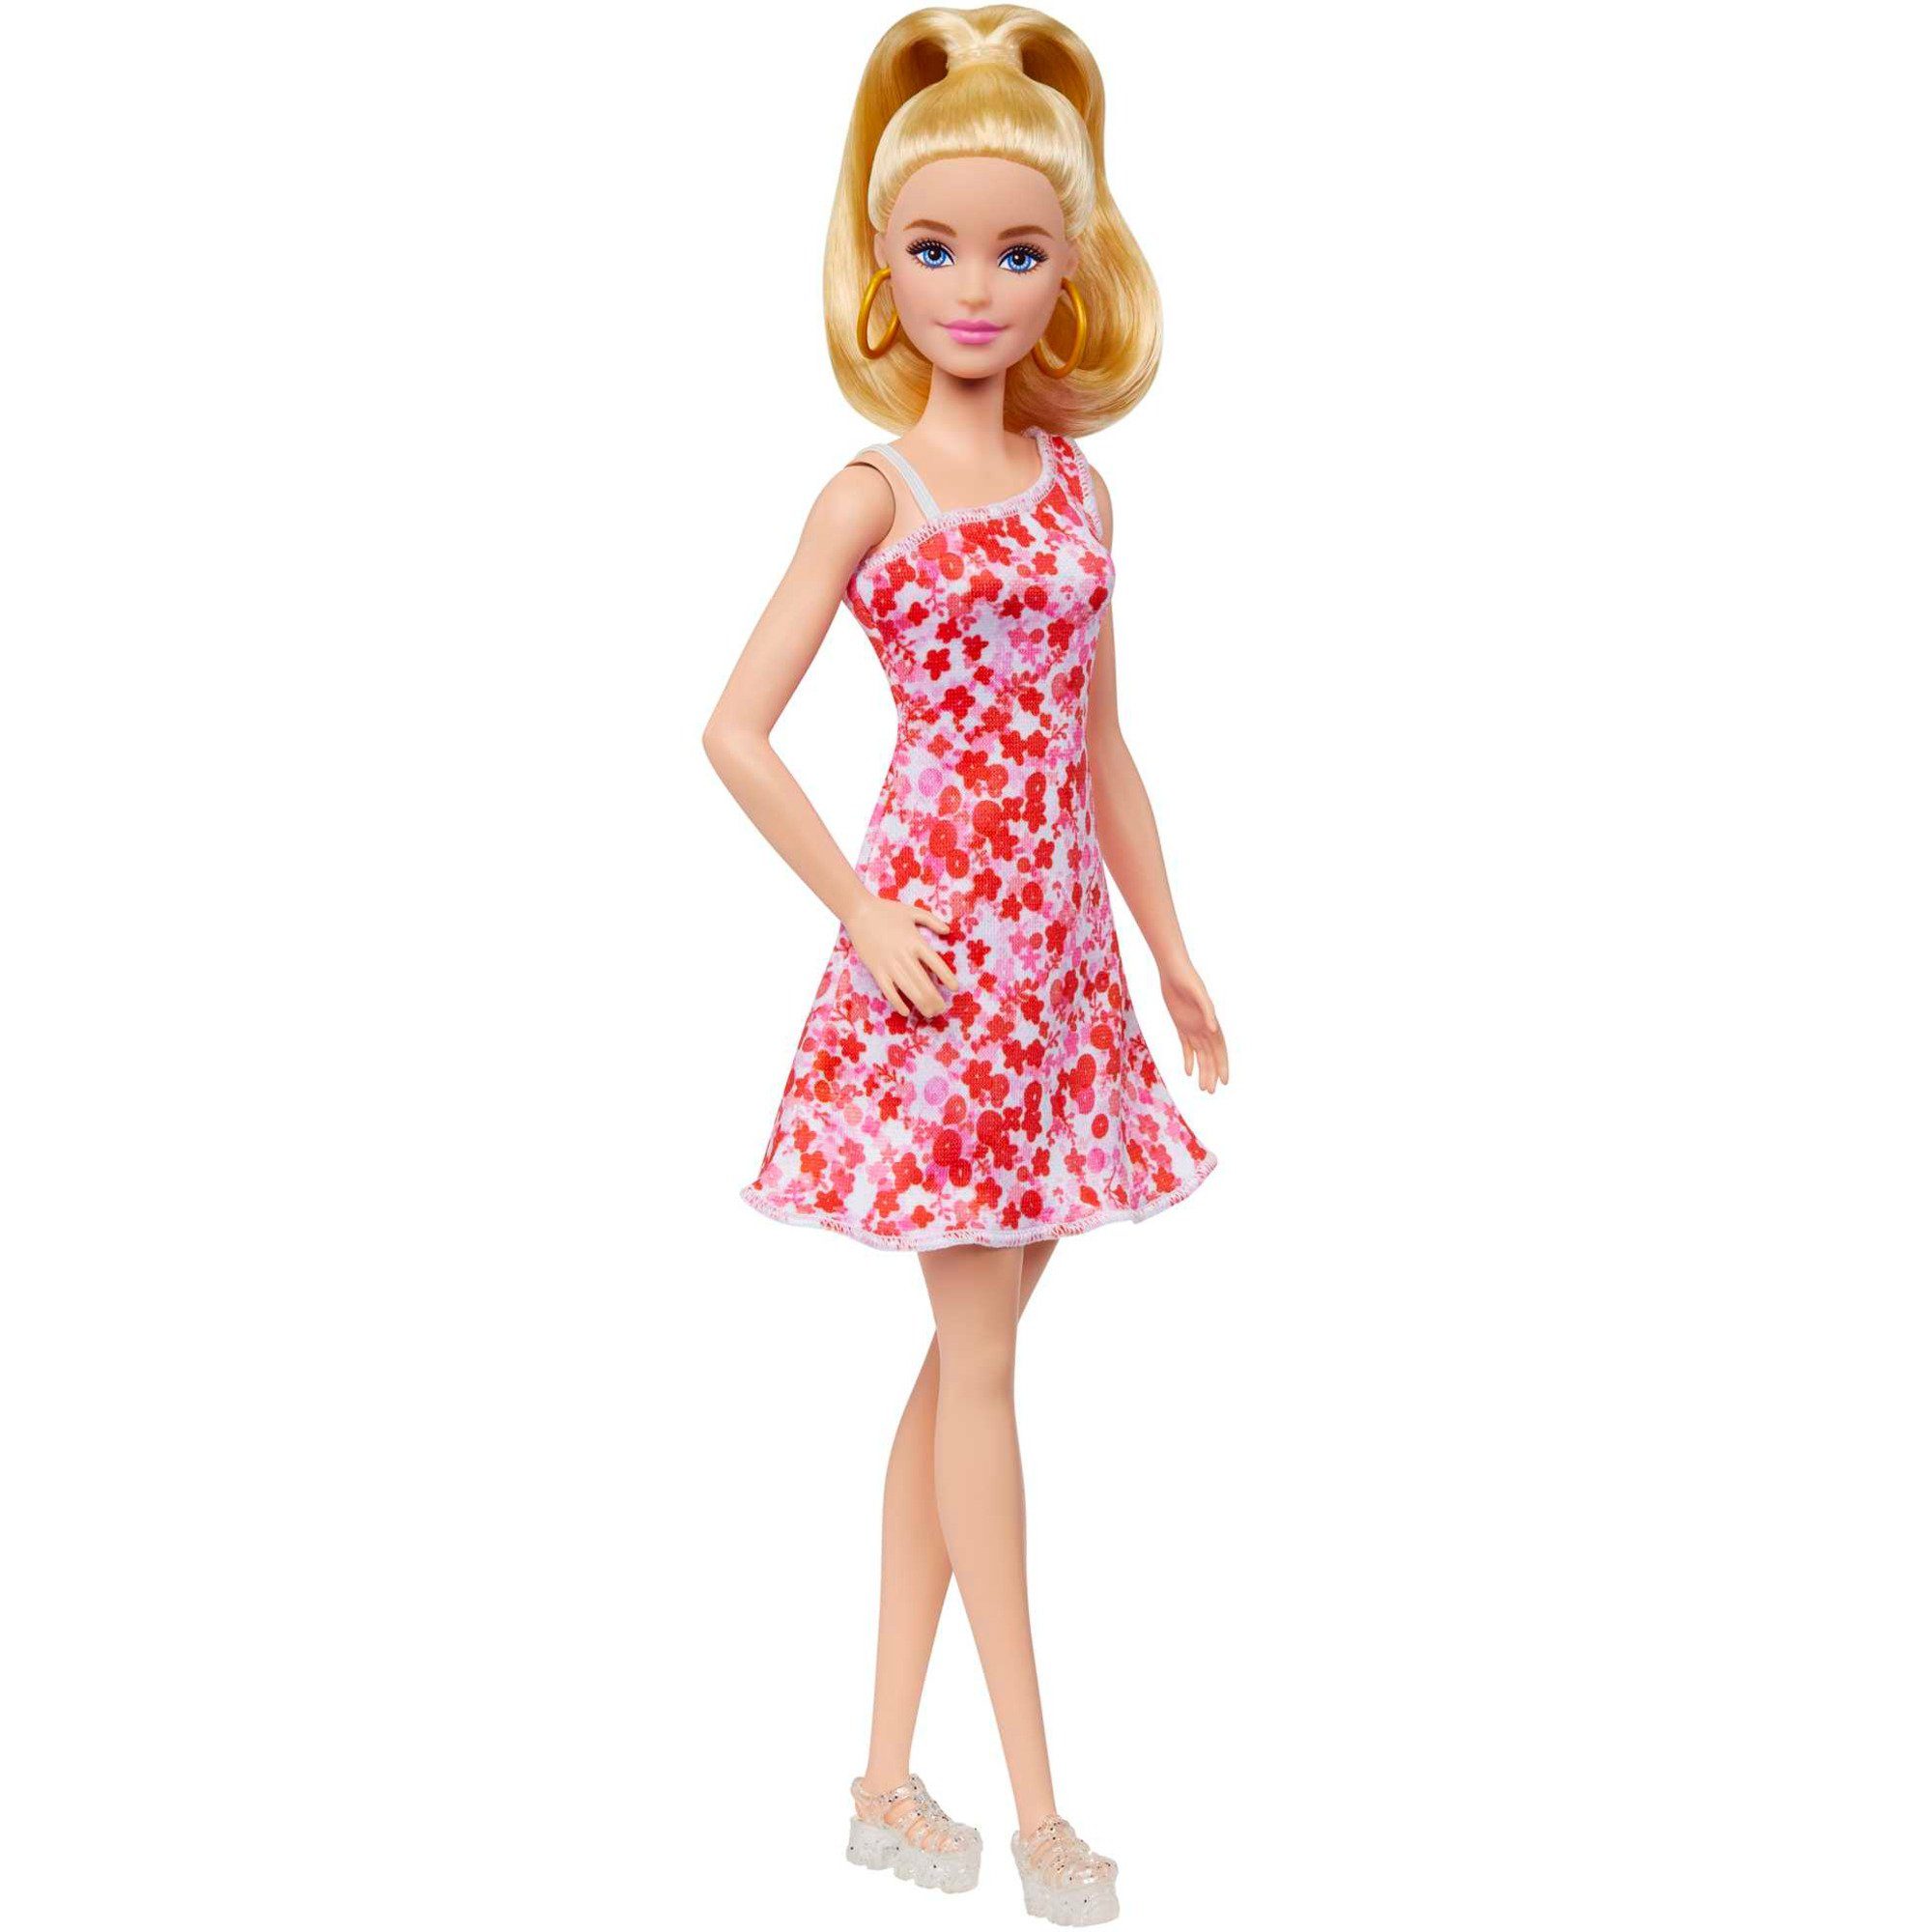 Mattel® Babypuppe Barbie Fashionistas-Puppe mit blondem Pferdeschwanz und Blumenkleid